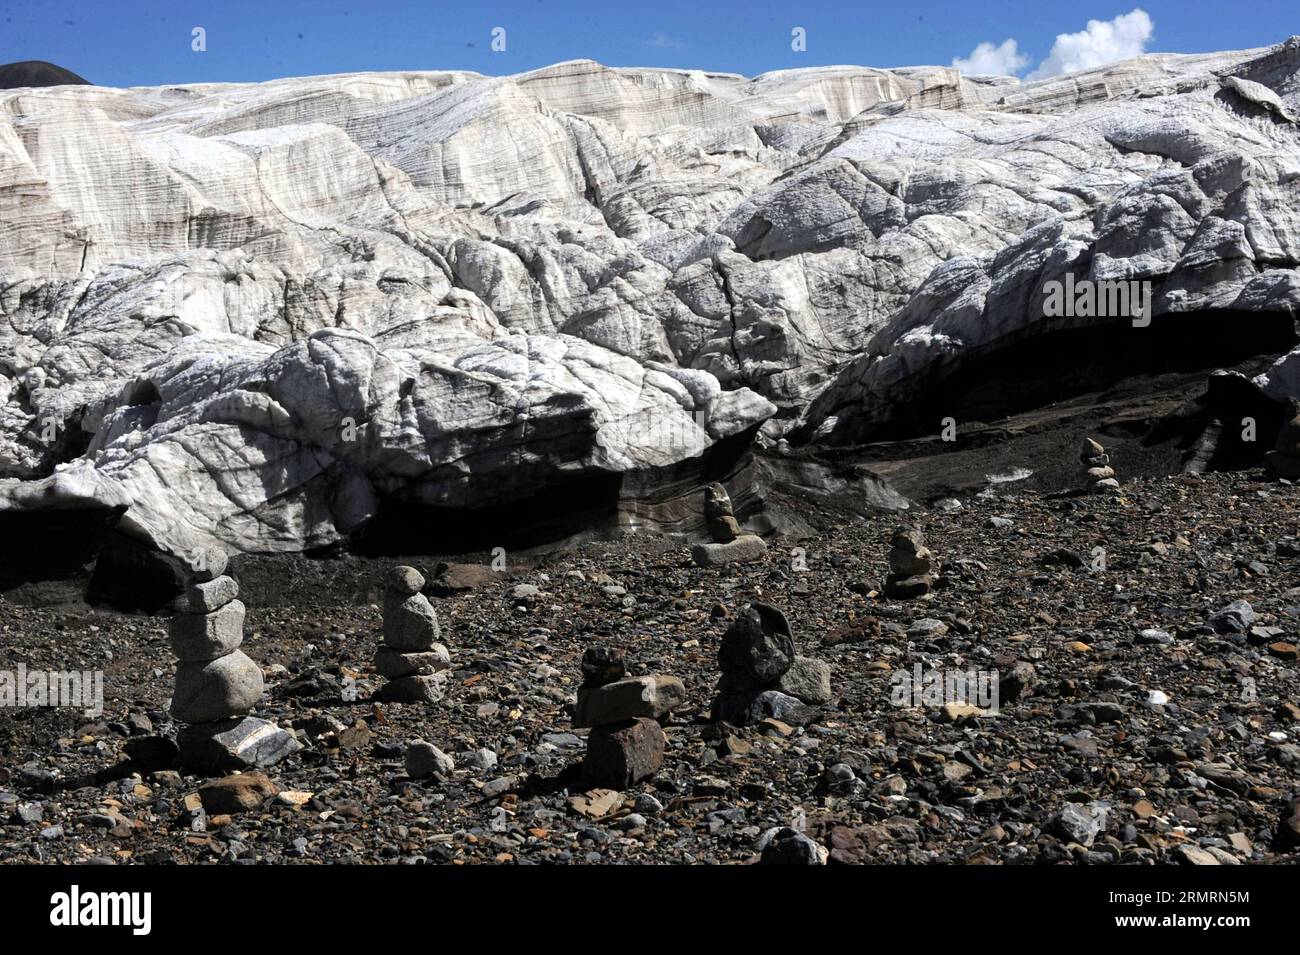 (140728) -- NAGQU, 28 de julio de 2014 (Xinhua) -- Foto tomada el 15 de julio de 2014 muestra el derretimiento del hielo del glaciar Purog Kangri en el condado de Shuanghu, Nagqu, región autónoma del Tíbet del suroeste de China. Como el terreno más alto en las regiones de latitud media del mundo, la meseta de Qinghai-Tíbet de China está ahora bajo la influencia negativa del calentamiento global. El glaciar Purog Kangri, el tercero más grande del mundo, se ha reducido en 50 metros en los últimos 30 años. (Xinhua/Tang Zhaoming) (hdt) CHINA-TIBET-PUROG KANGRI TICILAR-ENCOGIMIENTO (CN) PUBLICATIONxNOTxINxCHN Nagqu Julio 28 2014 XINHUA Foto tomada EL 15 2014 de julio muestra a T Foto de stock